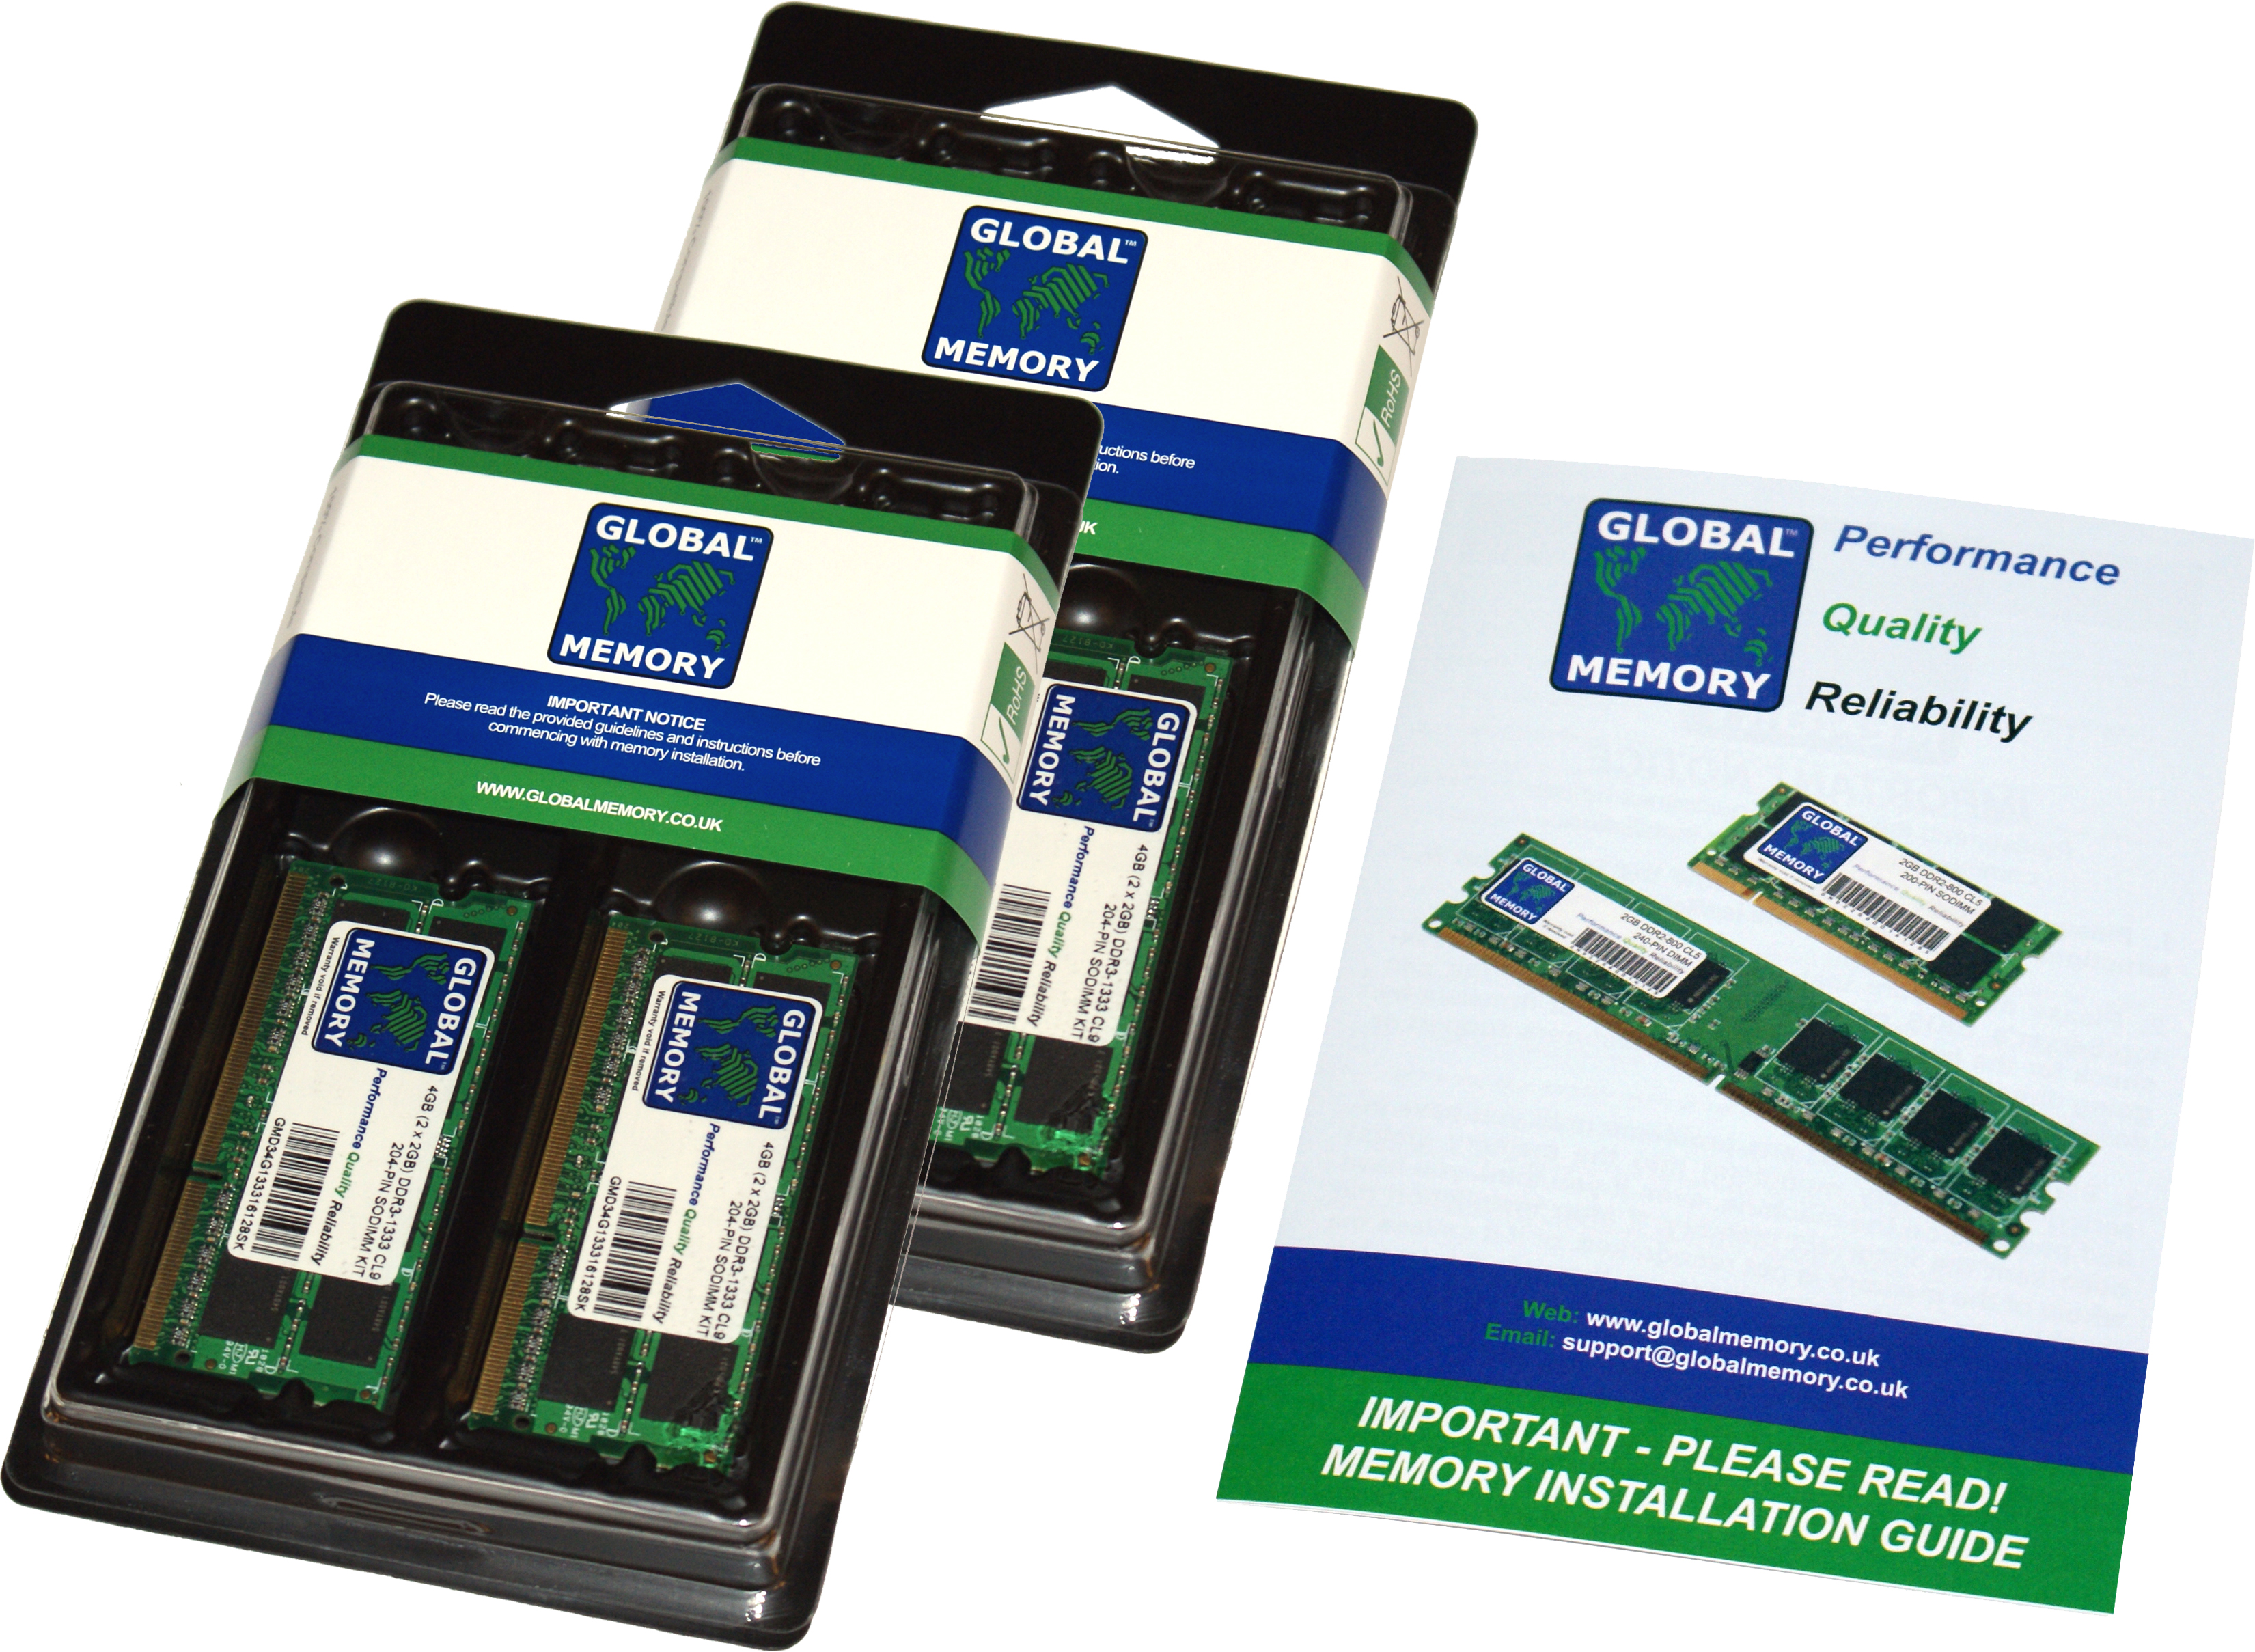 64GB (4 x 16GB) DDR4 2133MHz PC4-17000 260-PIN SODIMM MEMORY RAM KIT FOR FUJITSU LAPTOPS/NOTEBOOKS